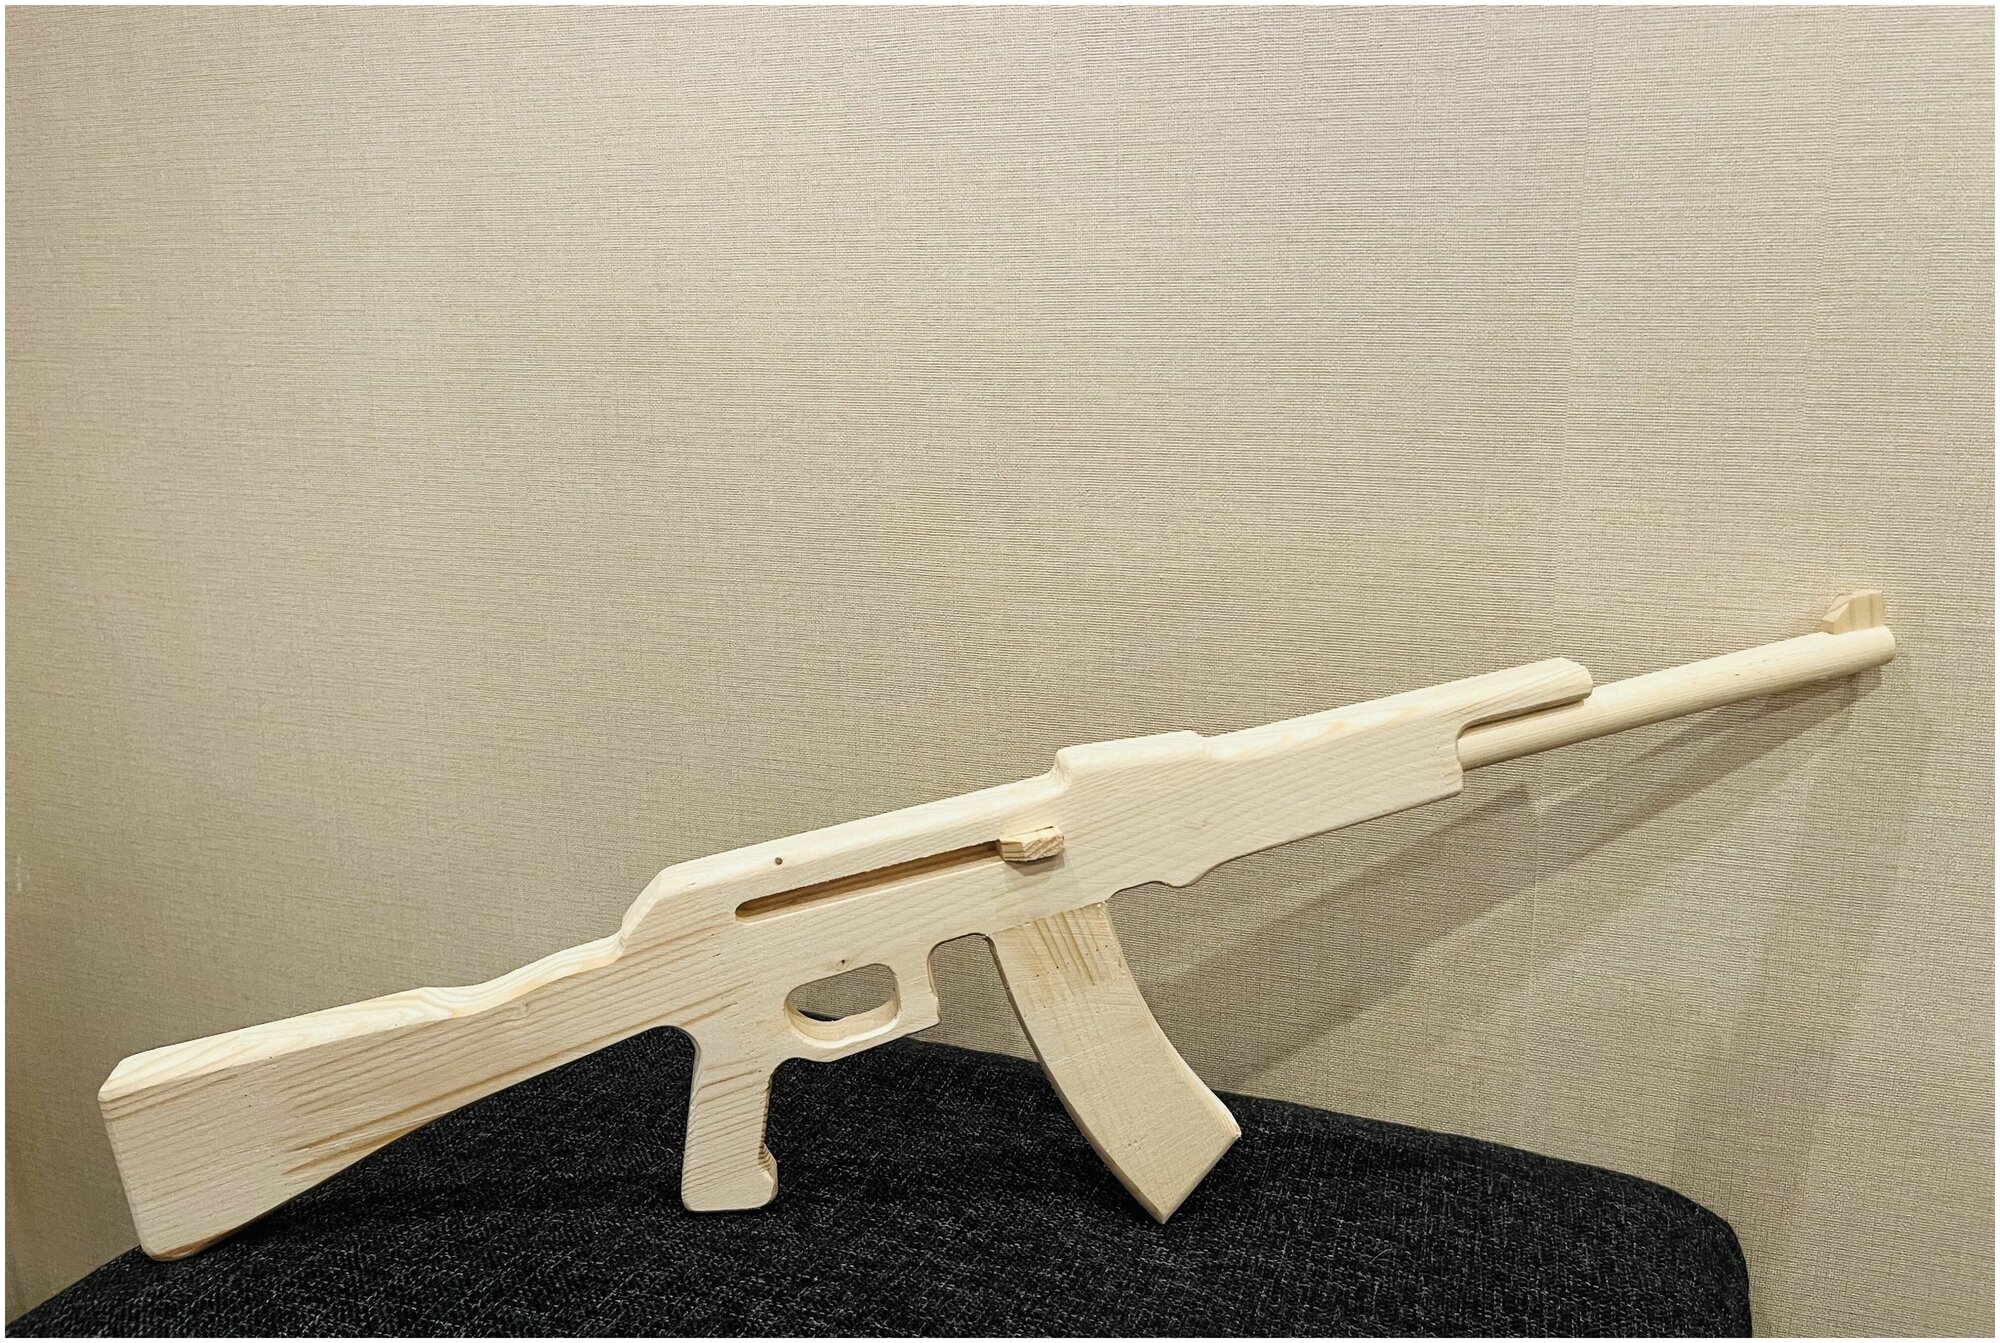 Автомат деревянный АК-47